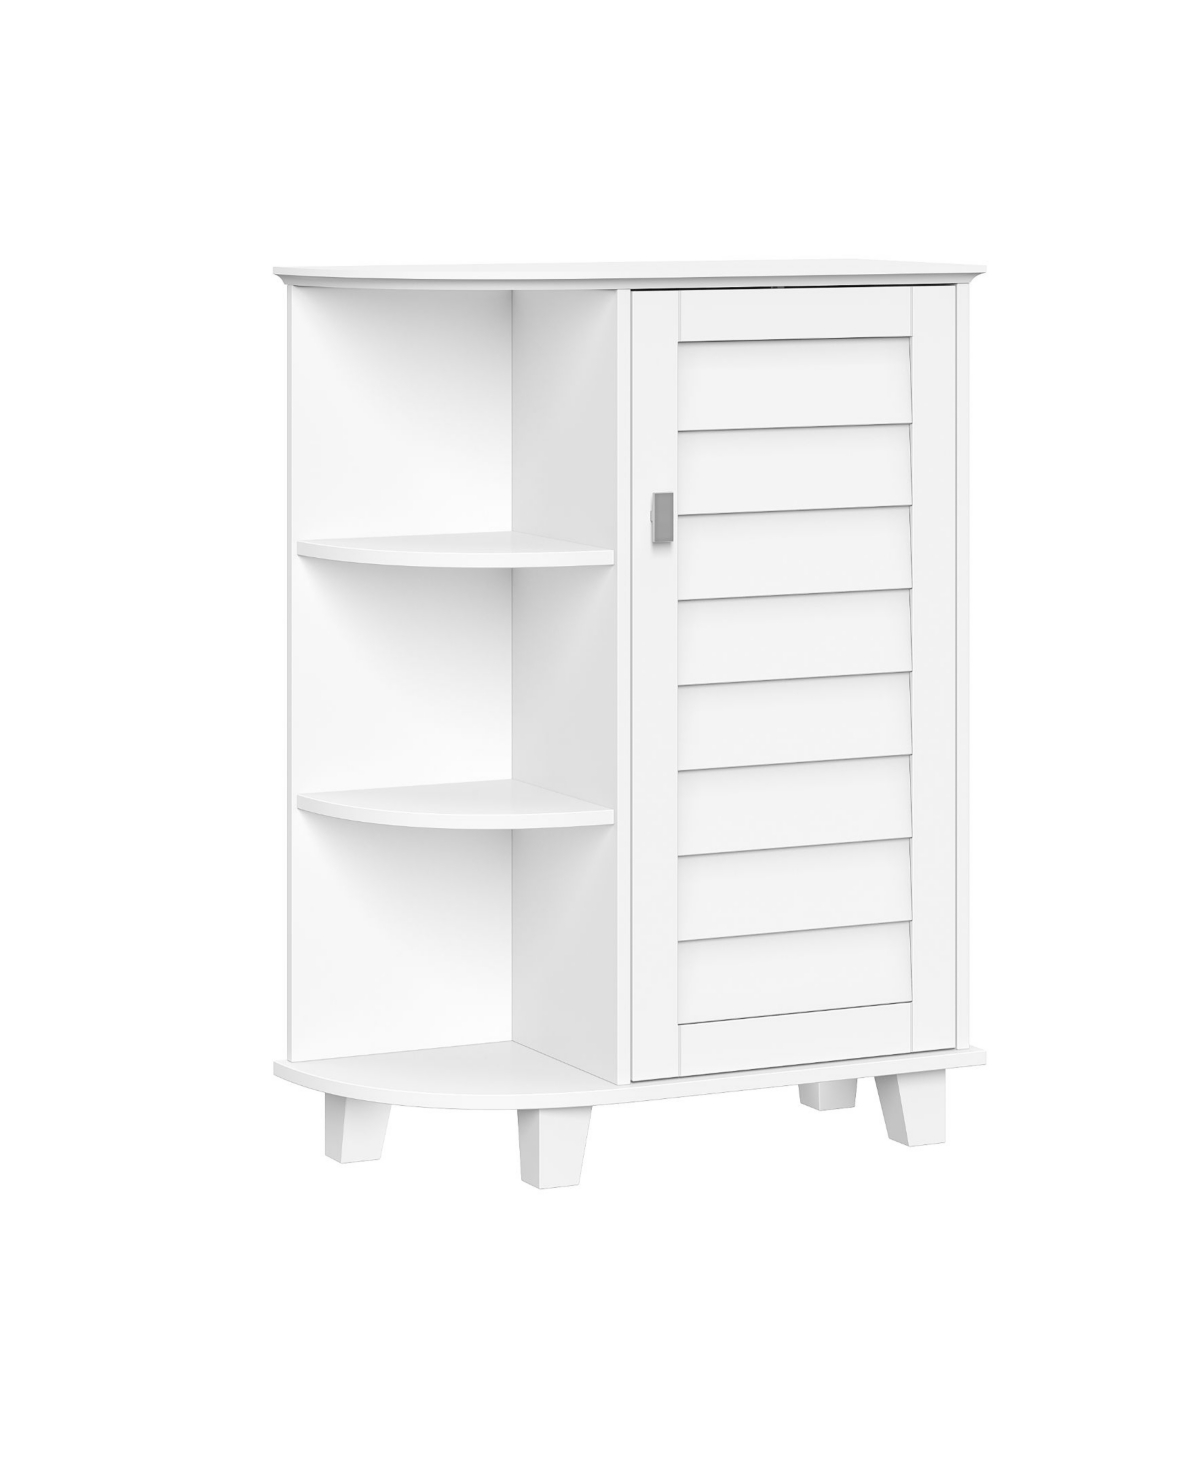 Riverridge Home 36.63" Single Door Floor Cabinet With Side Shelves In White